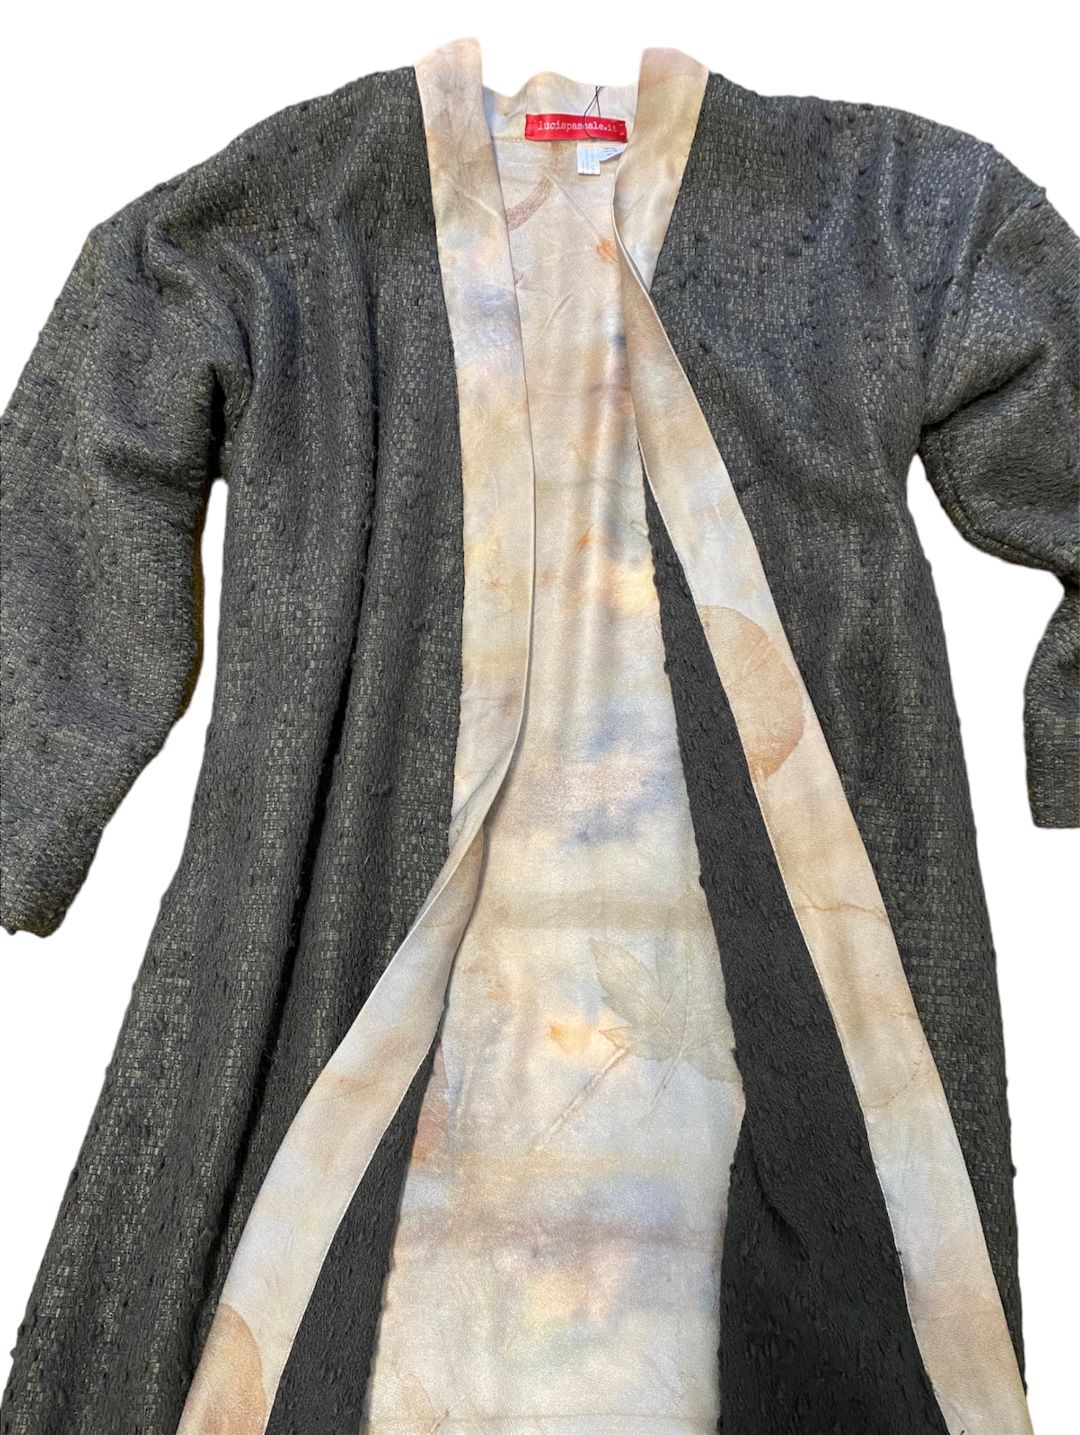 dettaglio interno del cappotto in lana jap